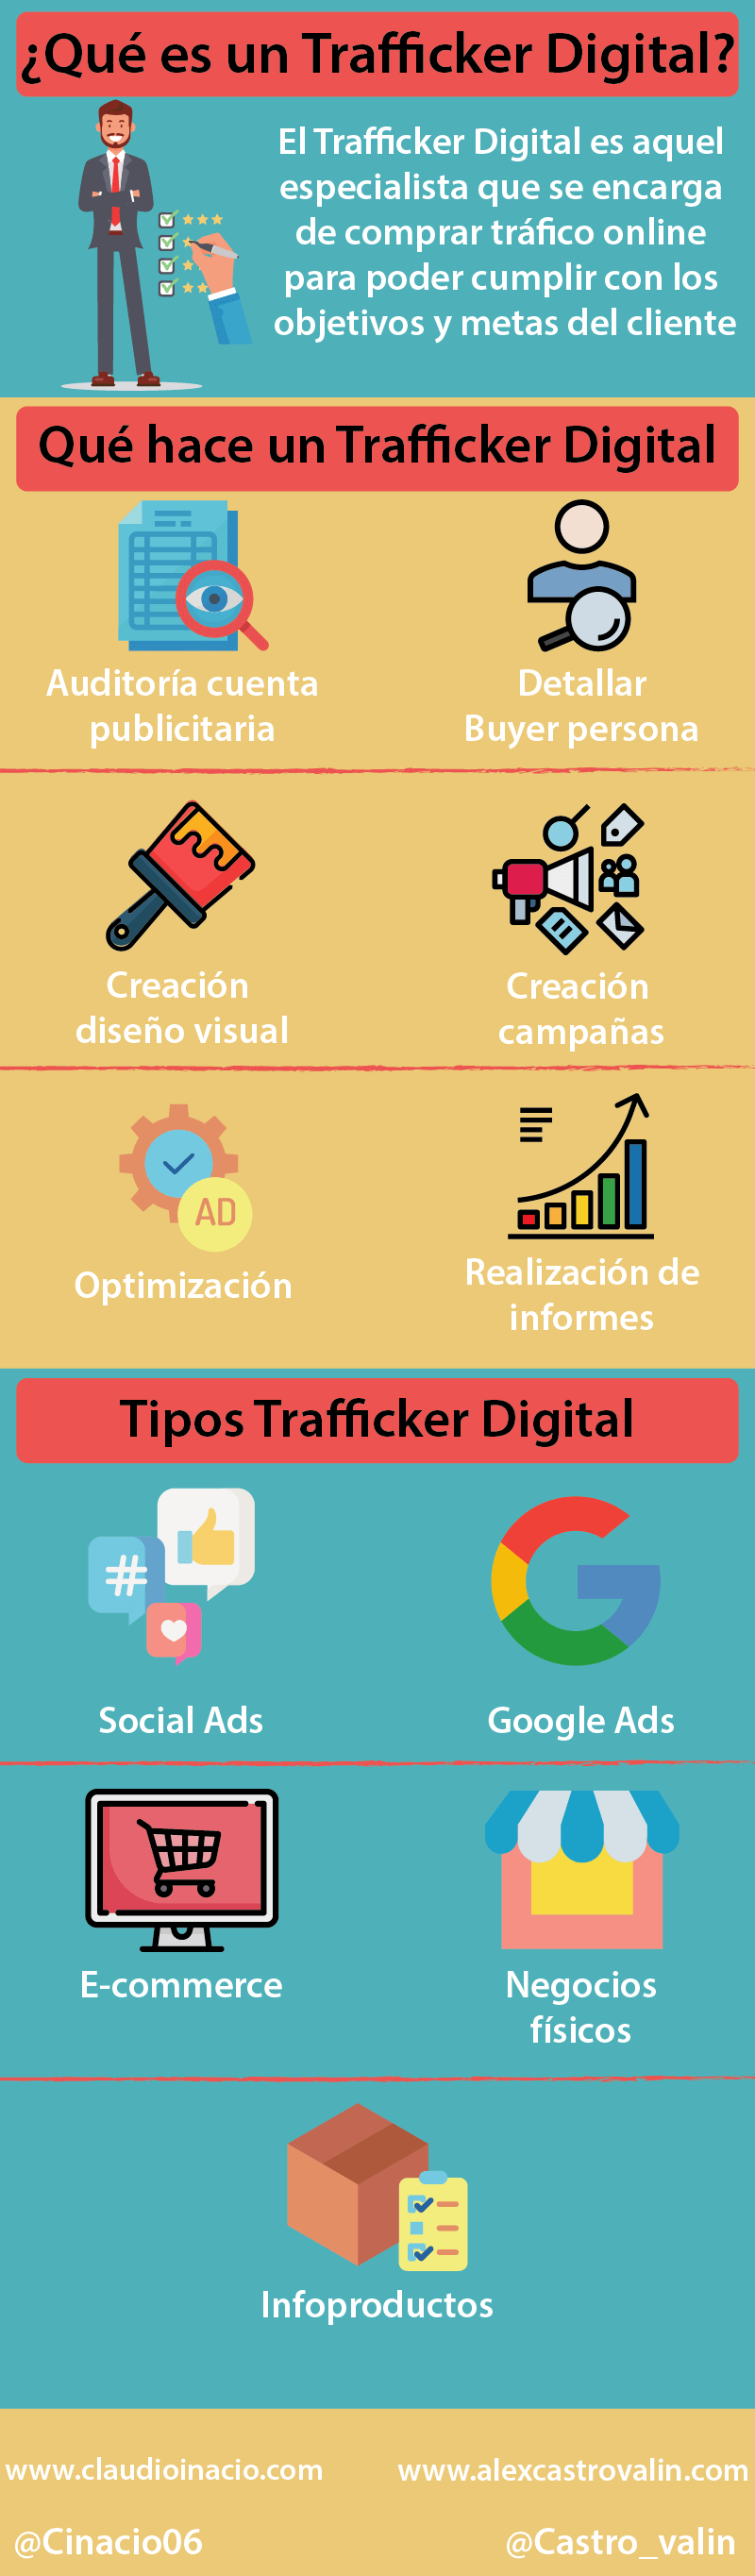 Trafficker digital